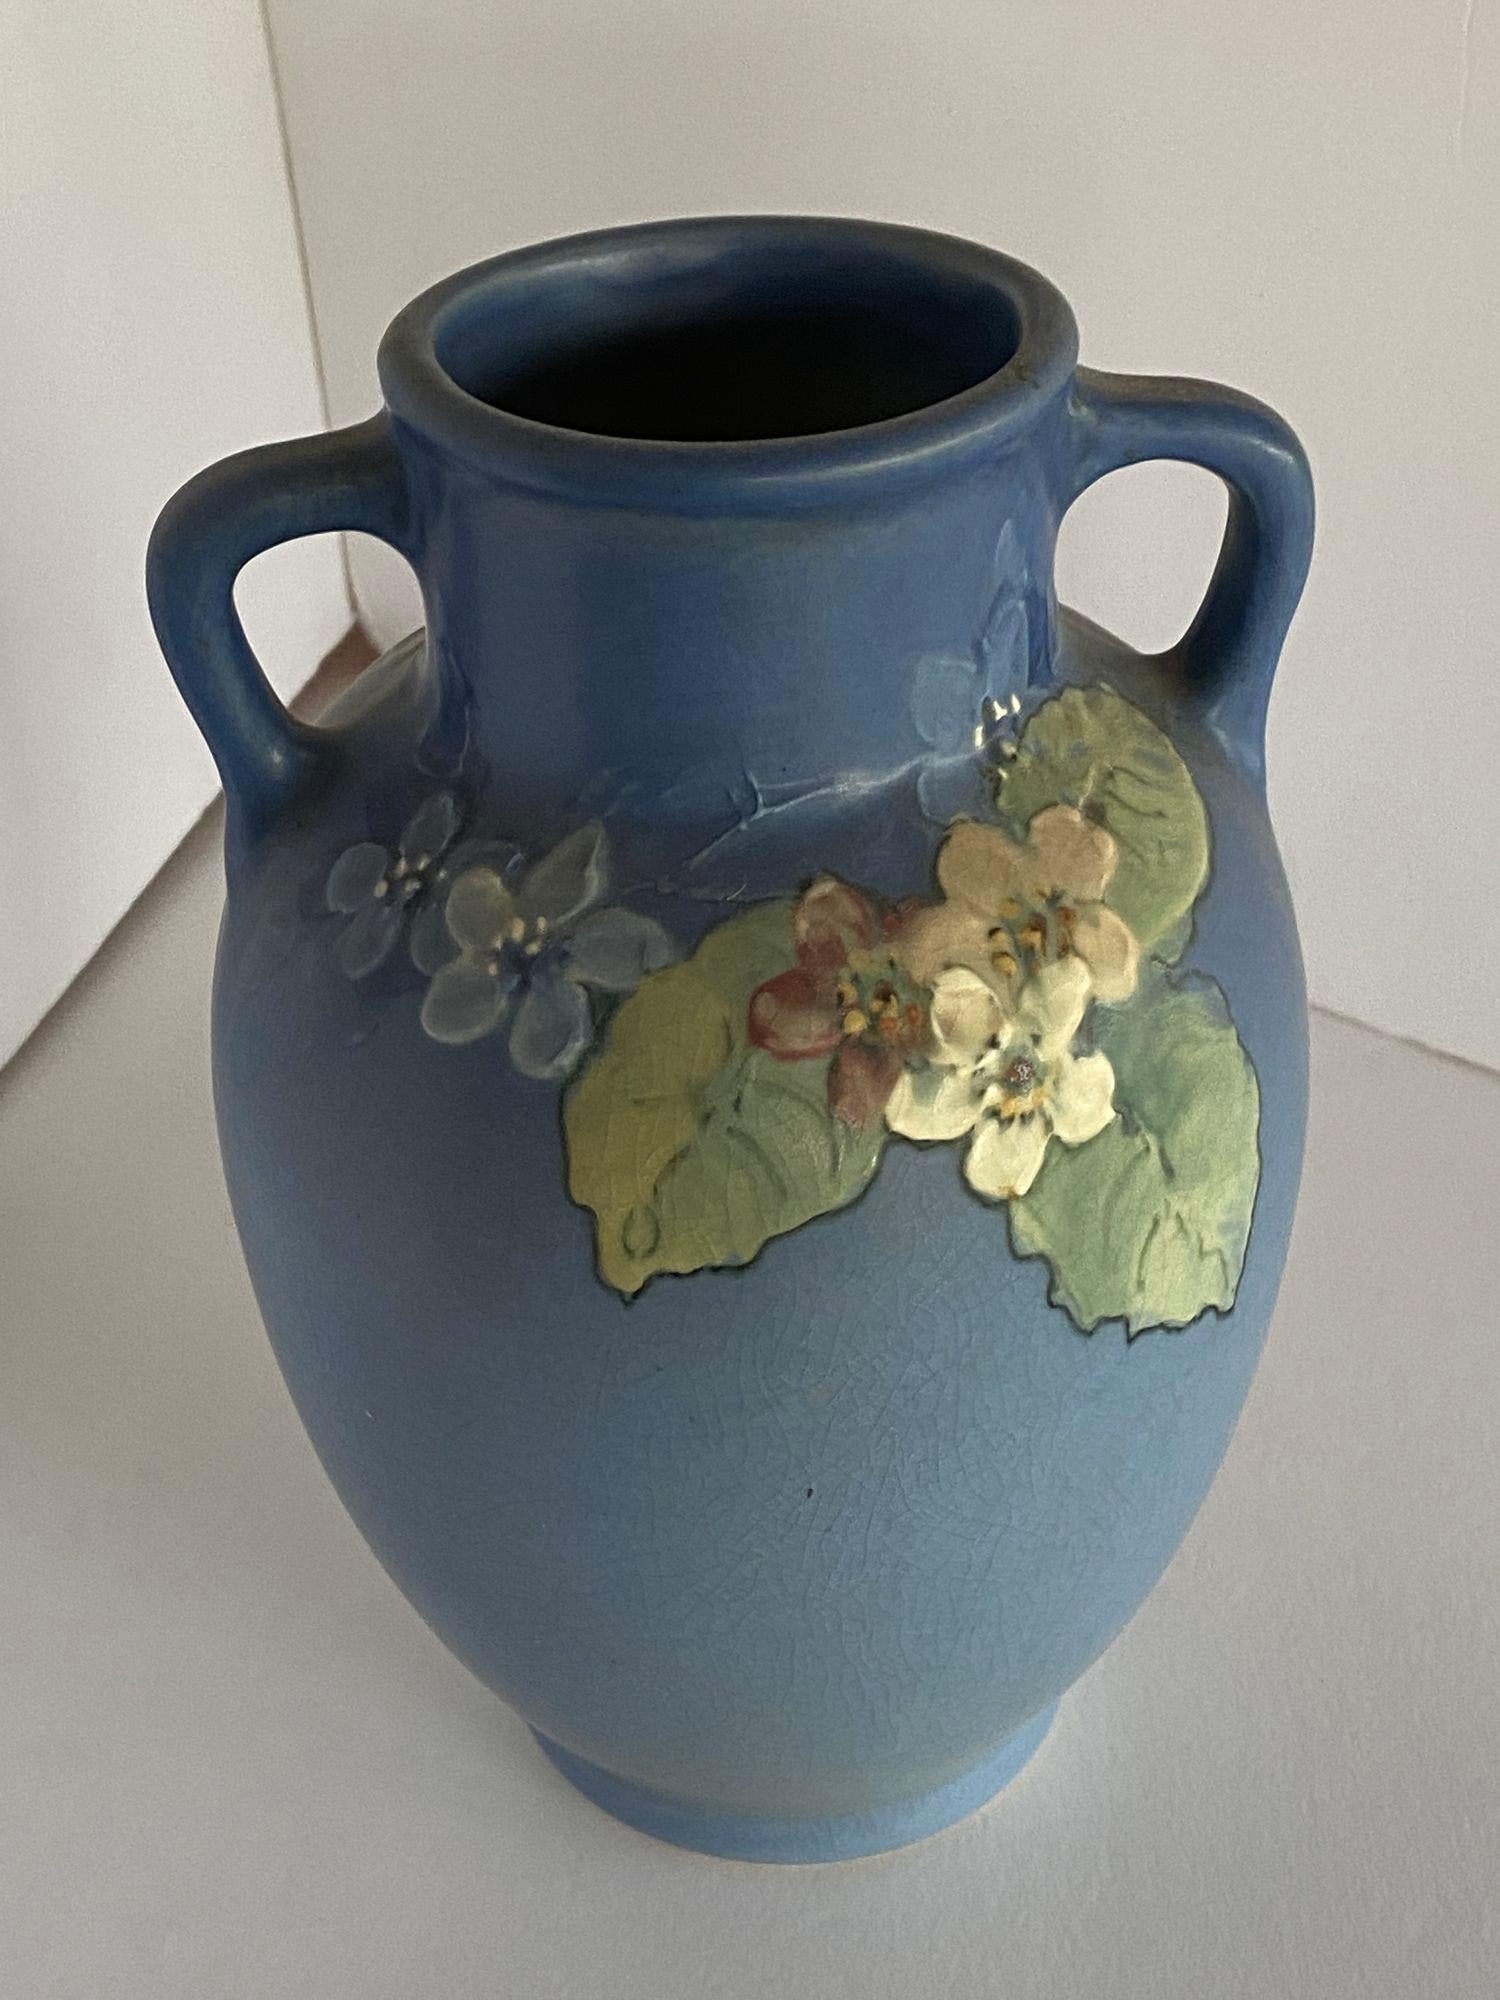 Antike Arts & Crafts Vase von Weller Pottery mit rosa und weißem Blumenmuster auf grünem bis blauem Grund, signiert von Künstler und Hersteller, um 1920.

Maße: 9,75